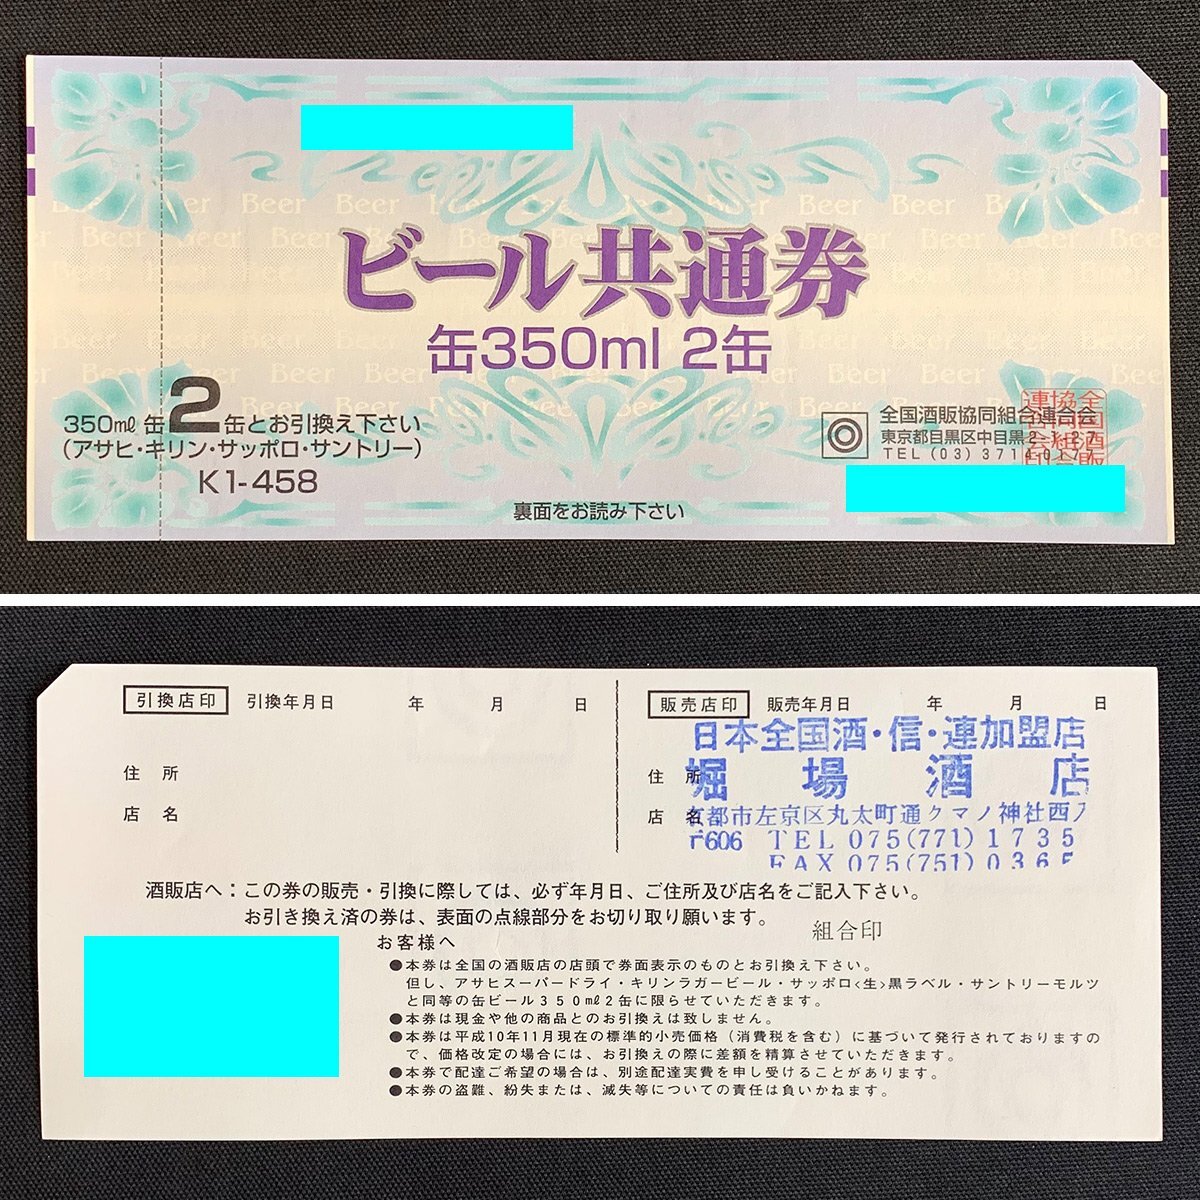 SU2c [ бесплатная доставка ] вся страна sake .. такой же комплект . полосный .. Sapporo жираф пиво подарочный сертификат пиво общий талон итого 141 листов 72,928 иен минут 